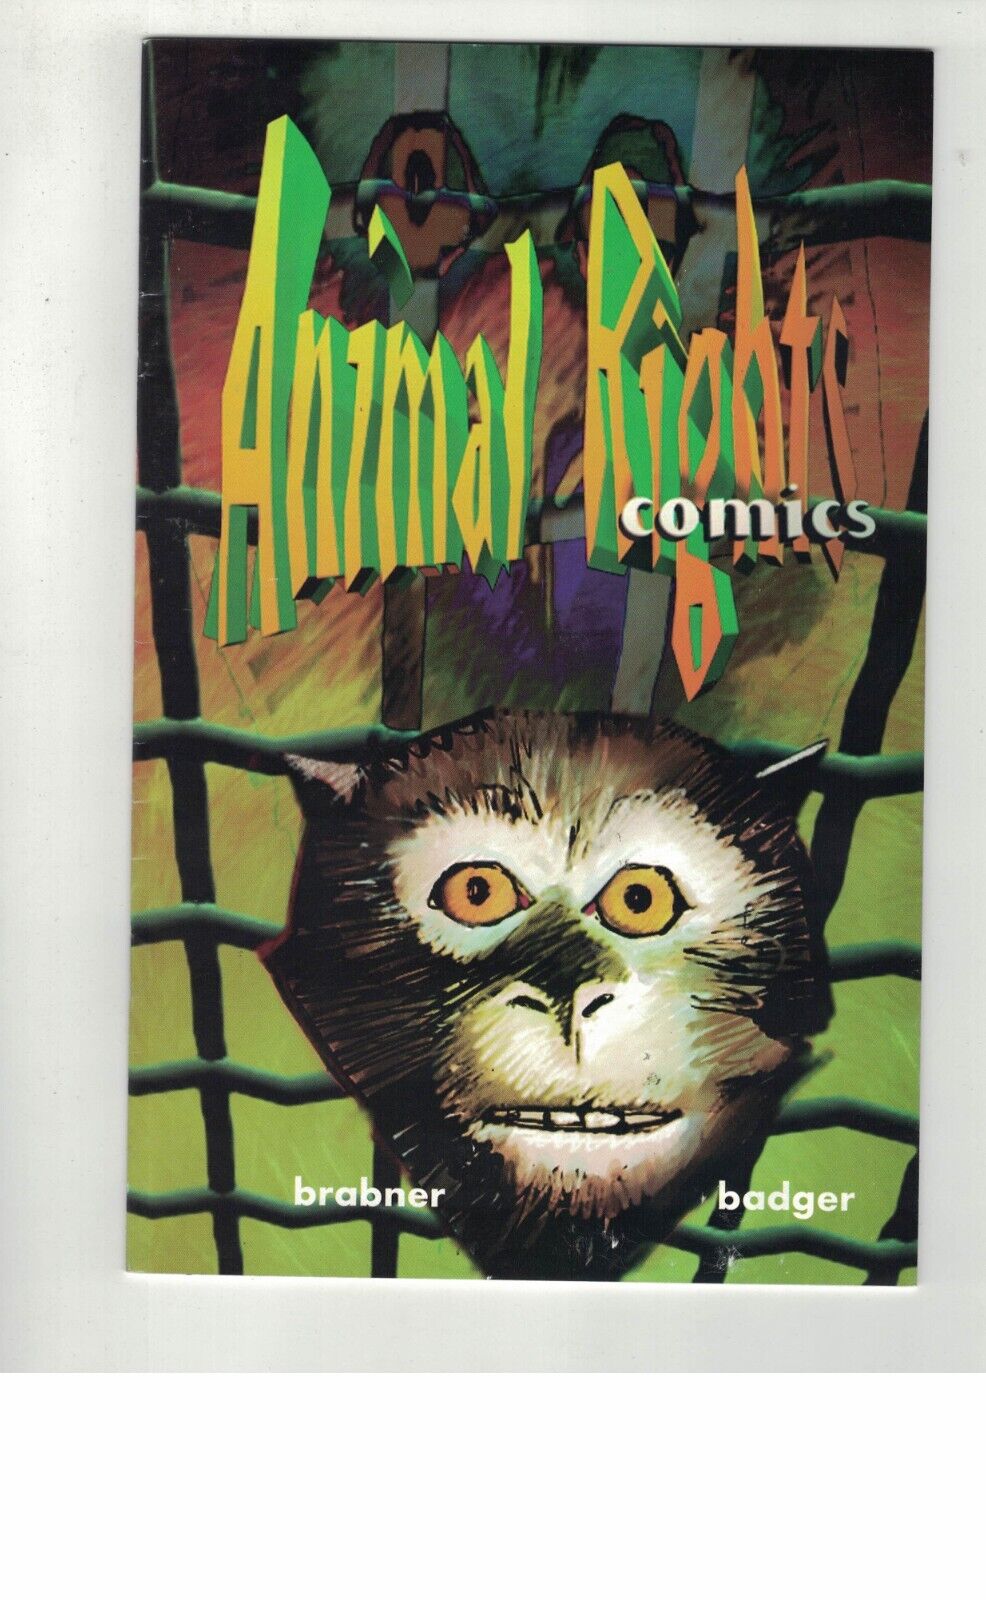 ANIMAL RIGHTS COMICS #1, 2-1996 RARE PETA COMICS-COMPLETE SET-MARK BADGER ART-VF